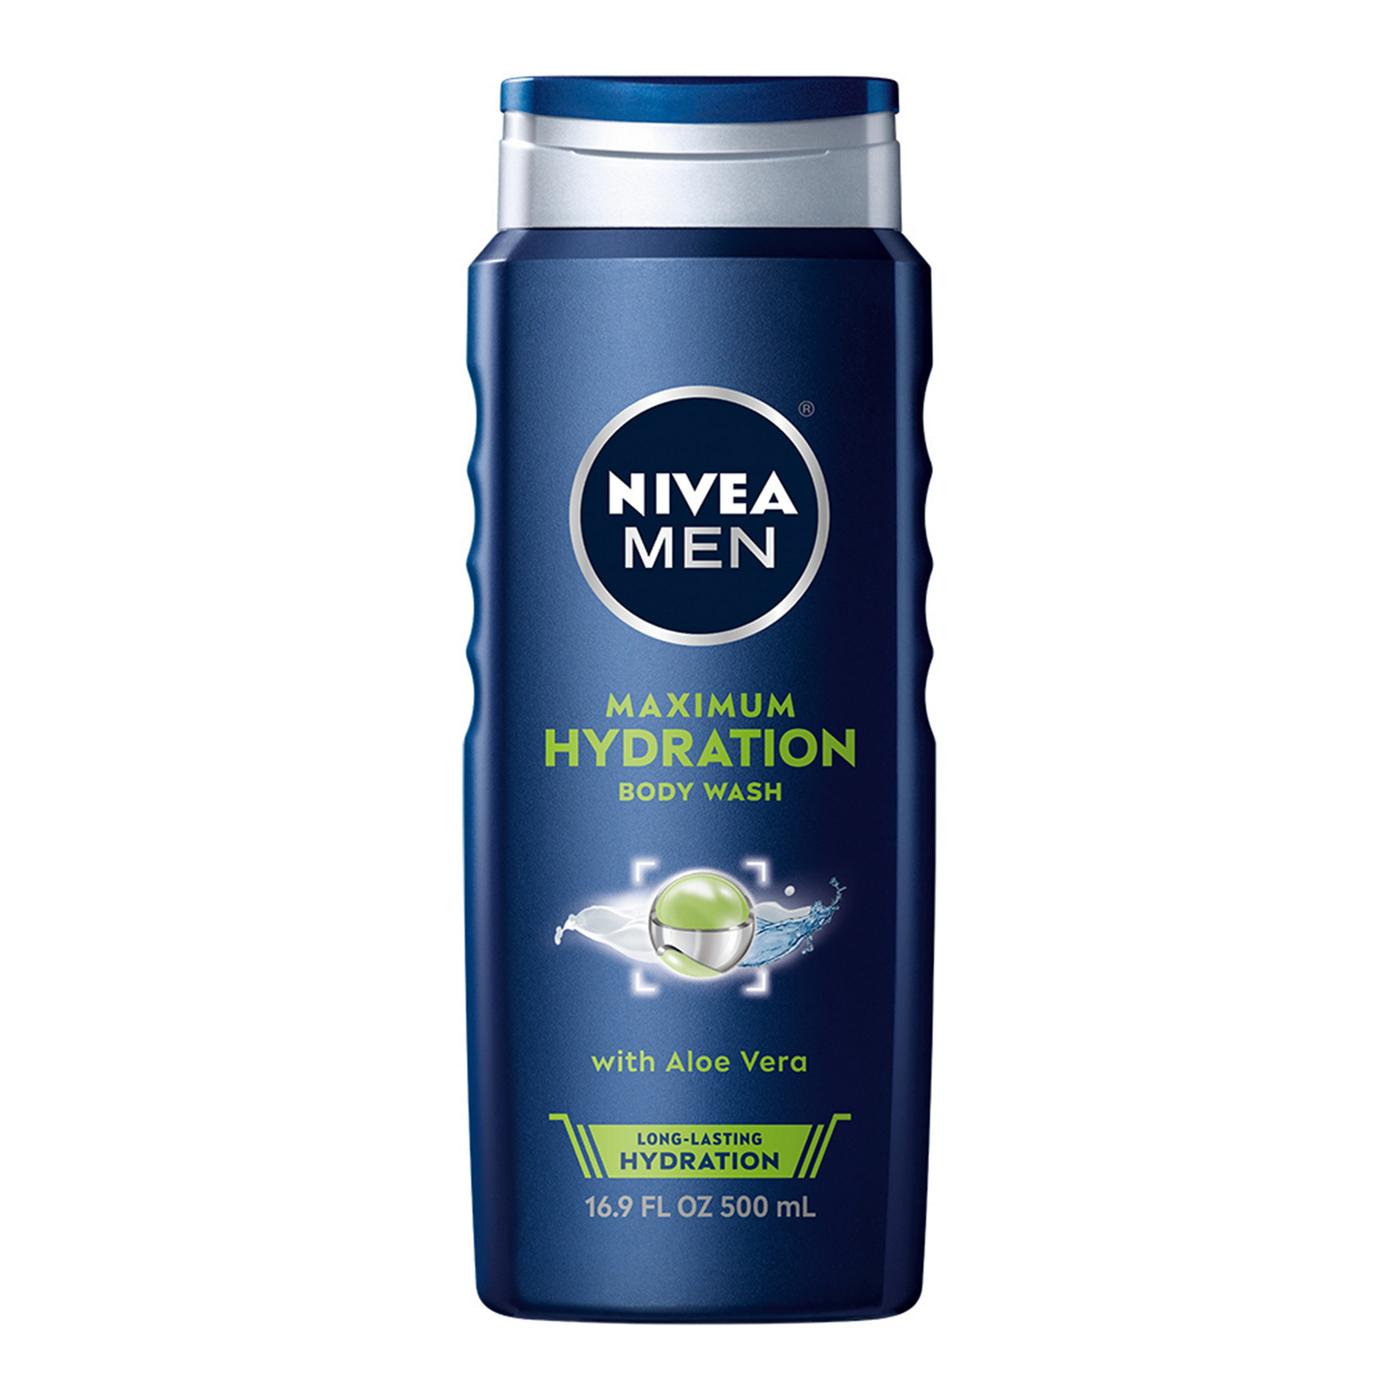 NIVEA Men Maximum Hydration Body Wash